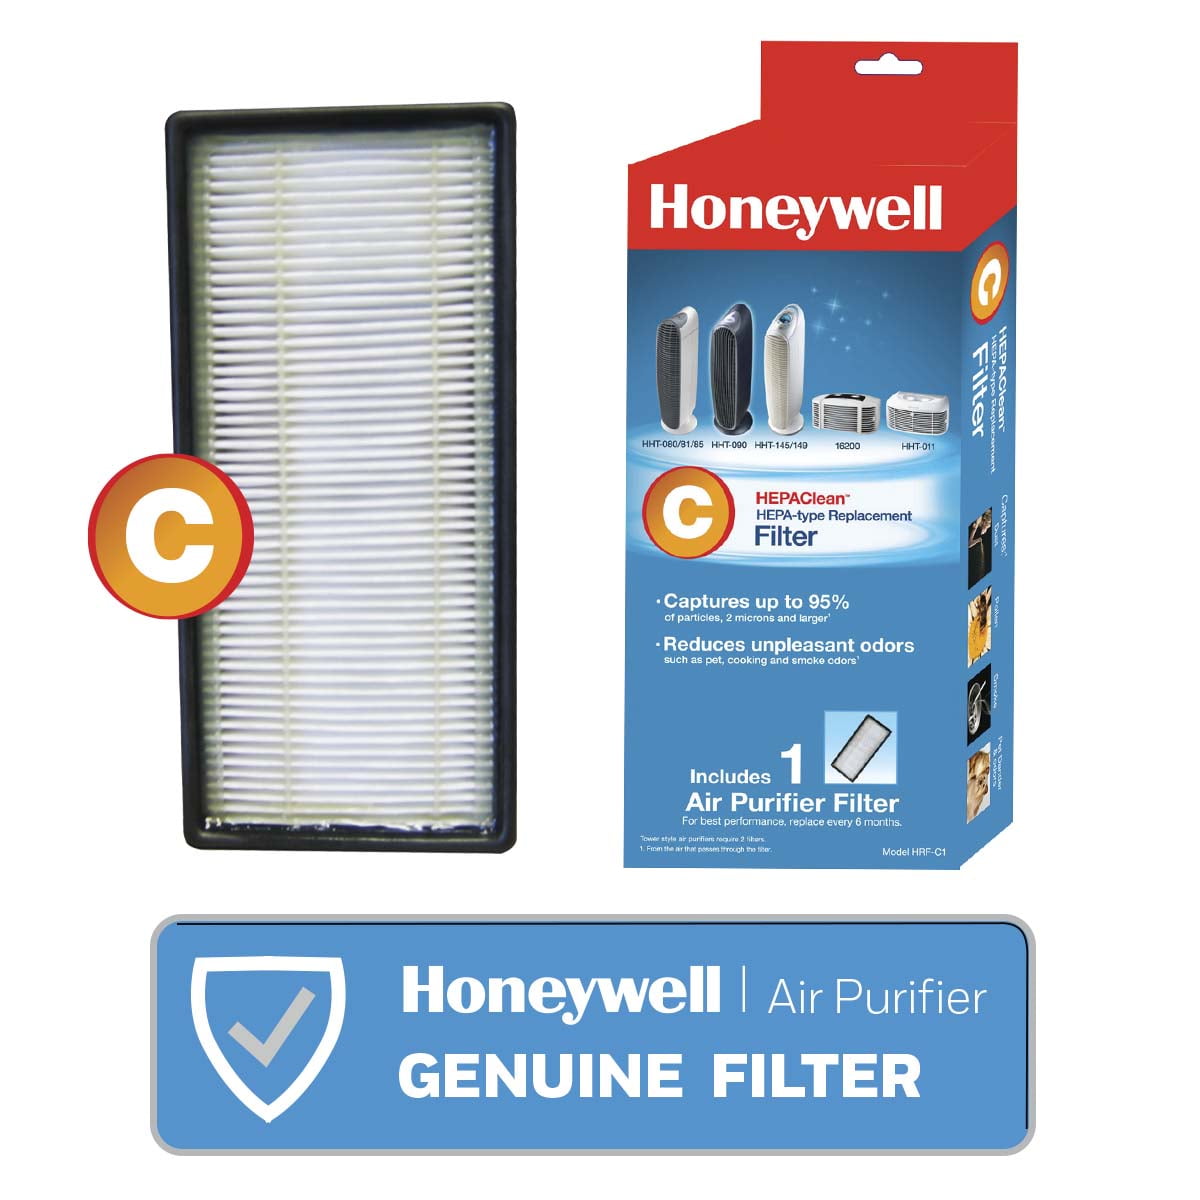 HHT-085 HHT-080 Filter For Honeywell 16200 HHT-145 HHT-081 HHT-090 HHT-011 